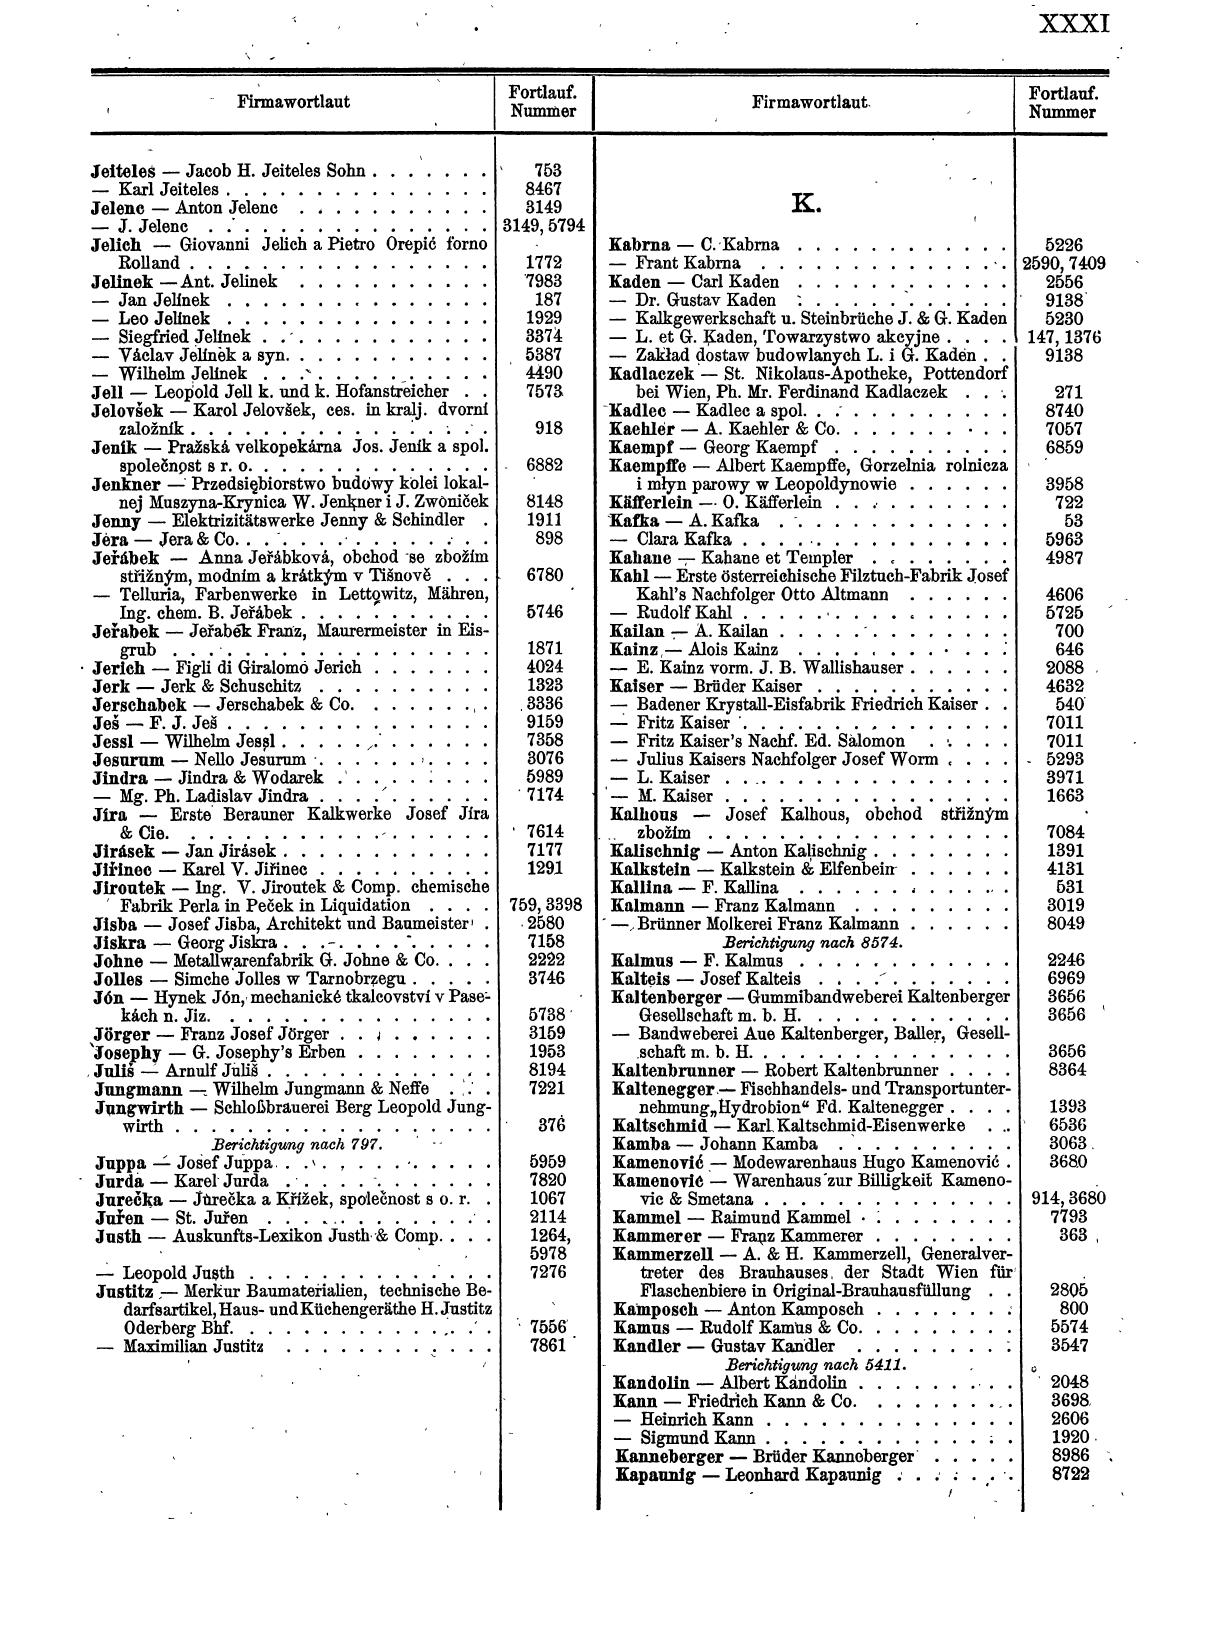 Zentralblatt für die Eintragungen in das Handelsregister 1913, Teil 1 - Seite 39